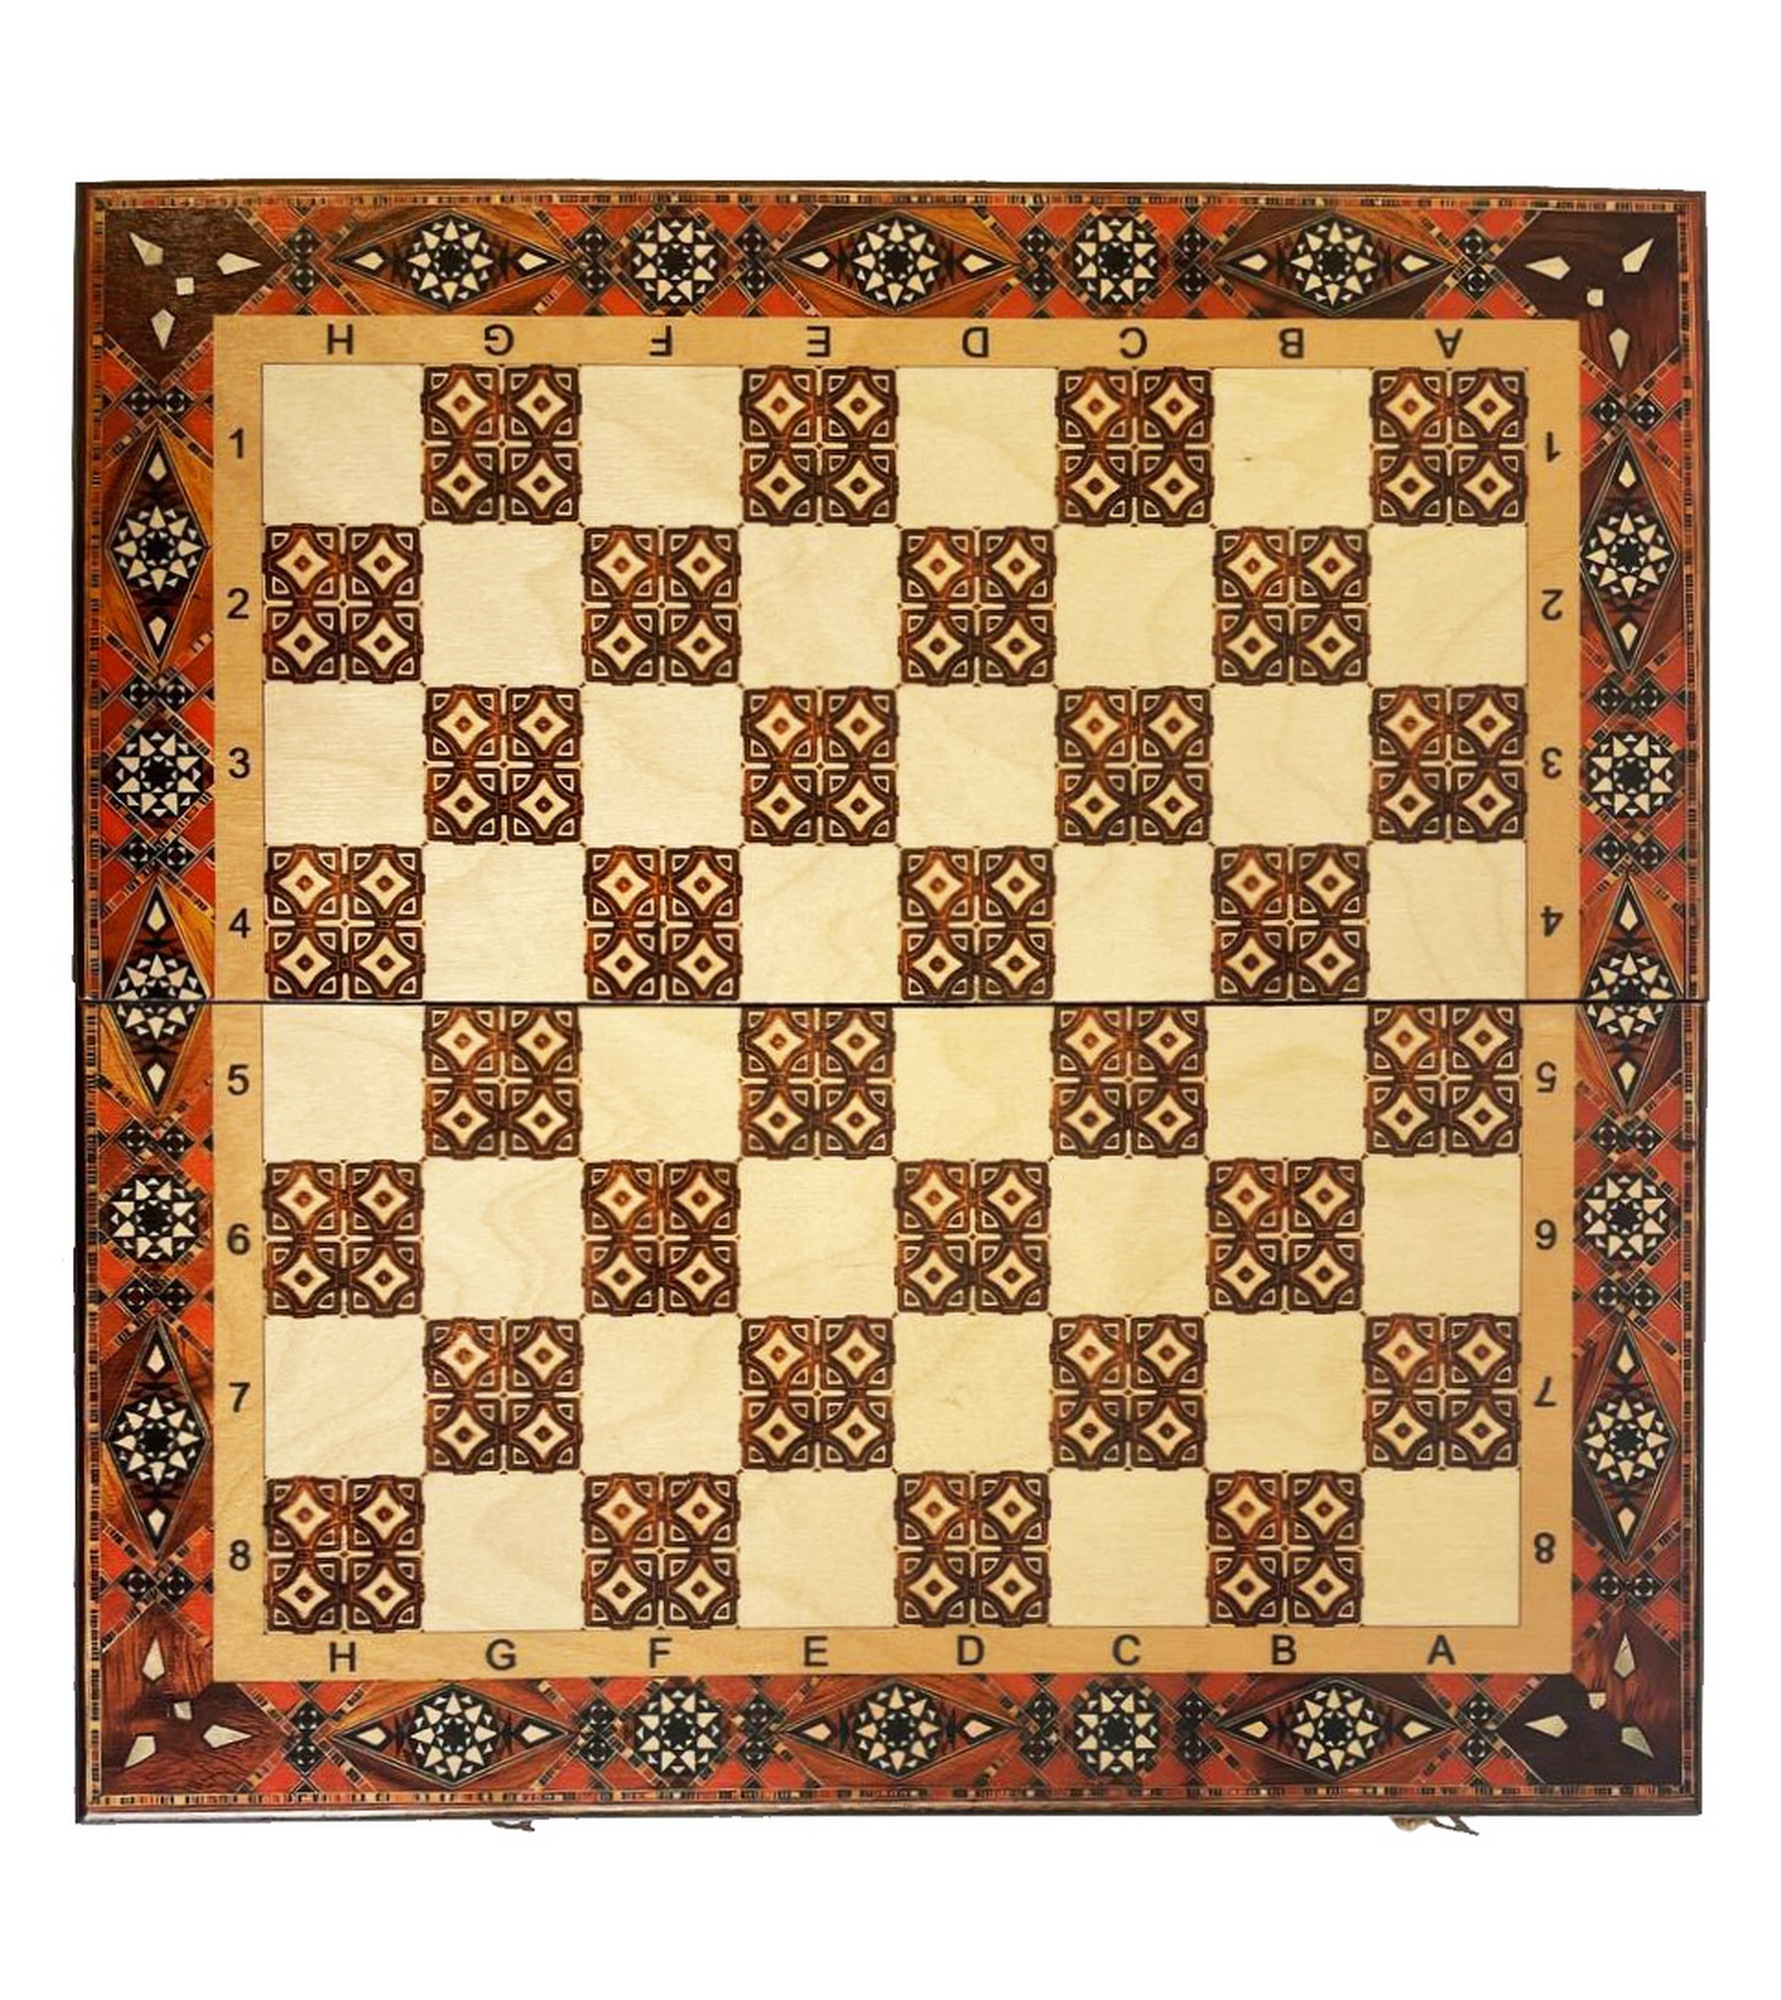 Шахматы "Византия 1" 40 Armenakyan AA102-41 1781_2000